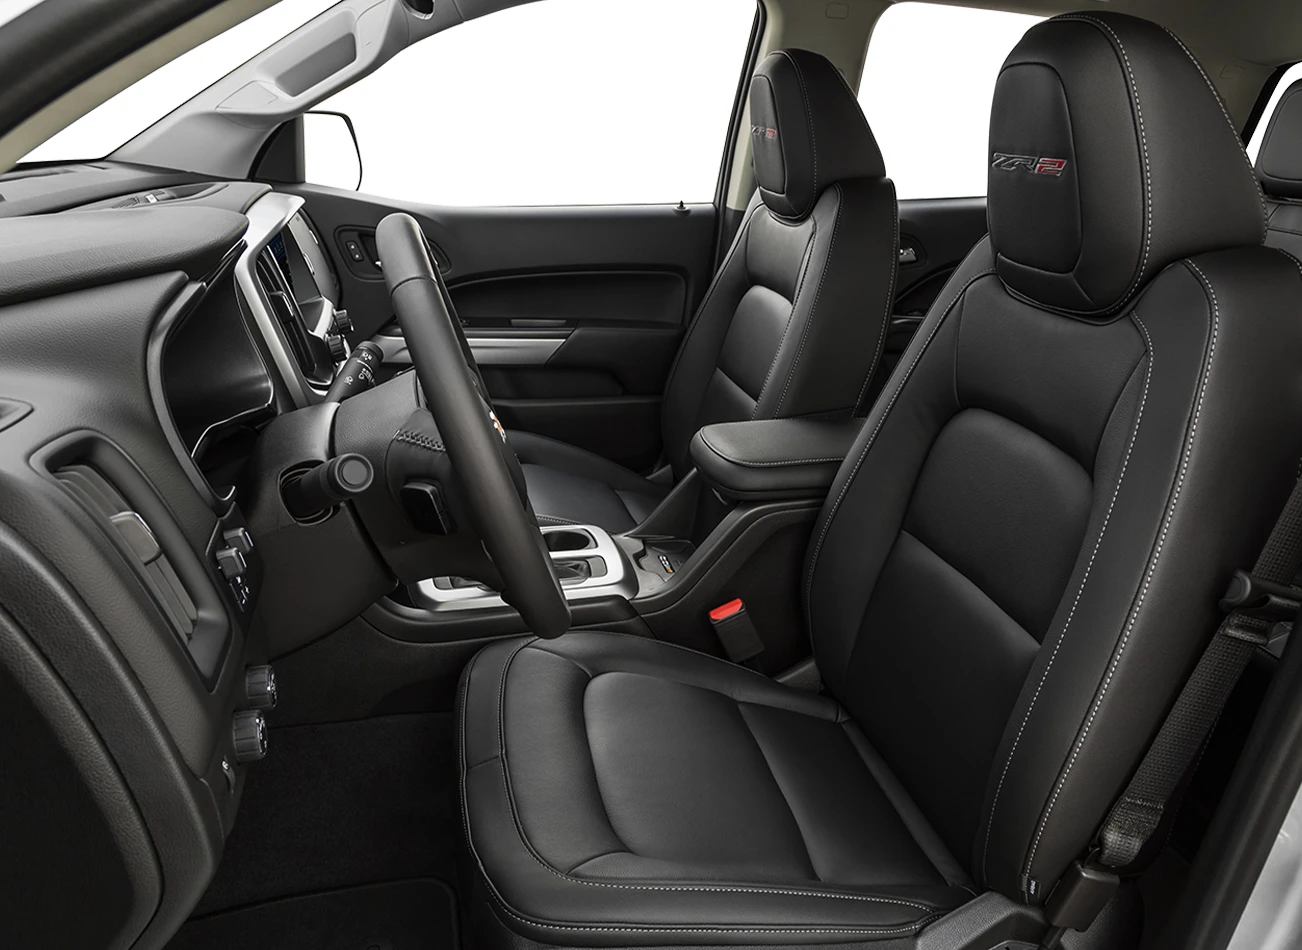 2020 Chevrolet Colorado: Front seats | CarMax